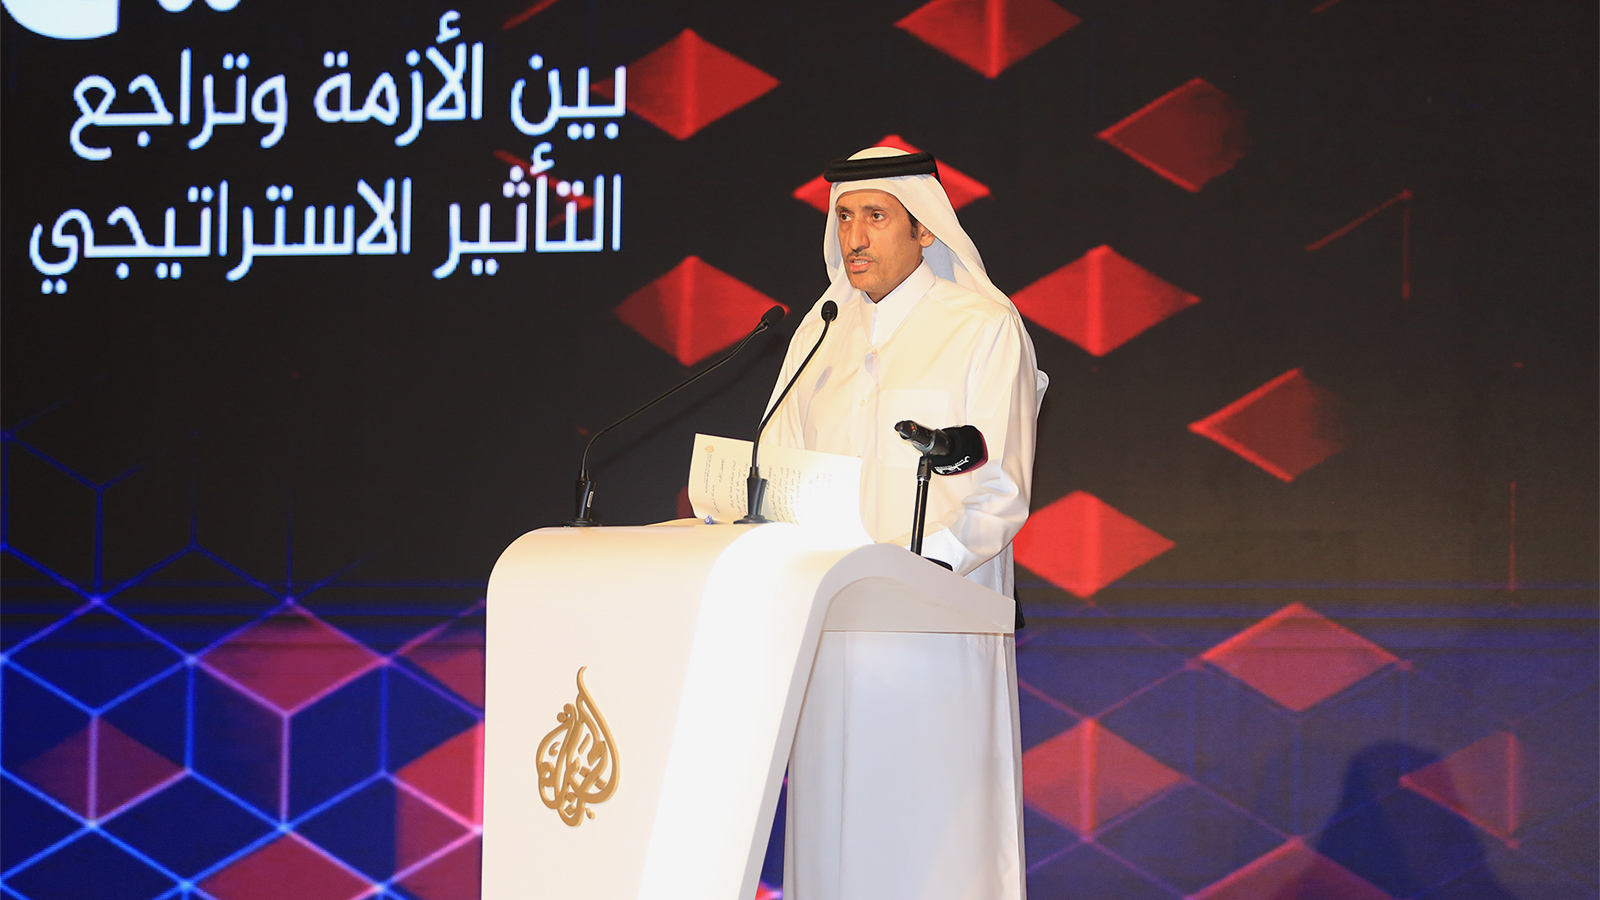 ‪رئيس مجلس إدارة شبكة الجزيرة يؤكد أن حصار قطر ضرب المنظومة الخليجية في عمقها‬ (الجزيرة)